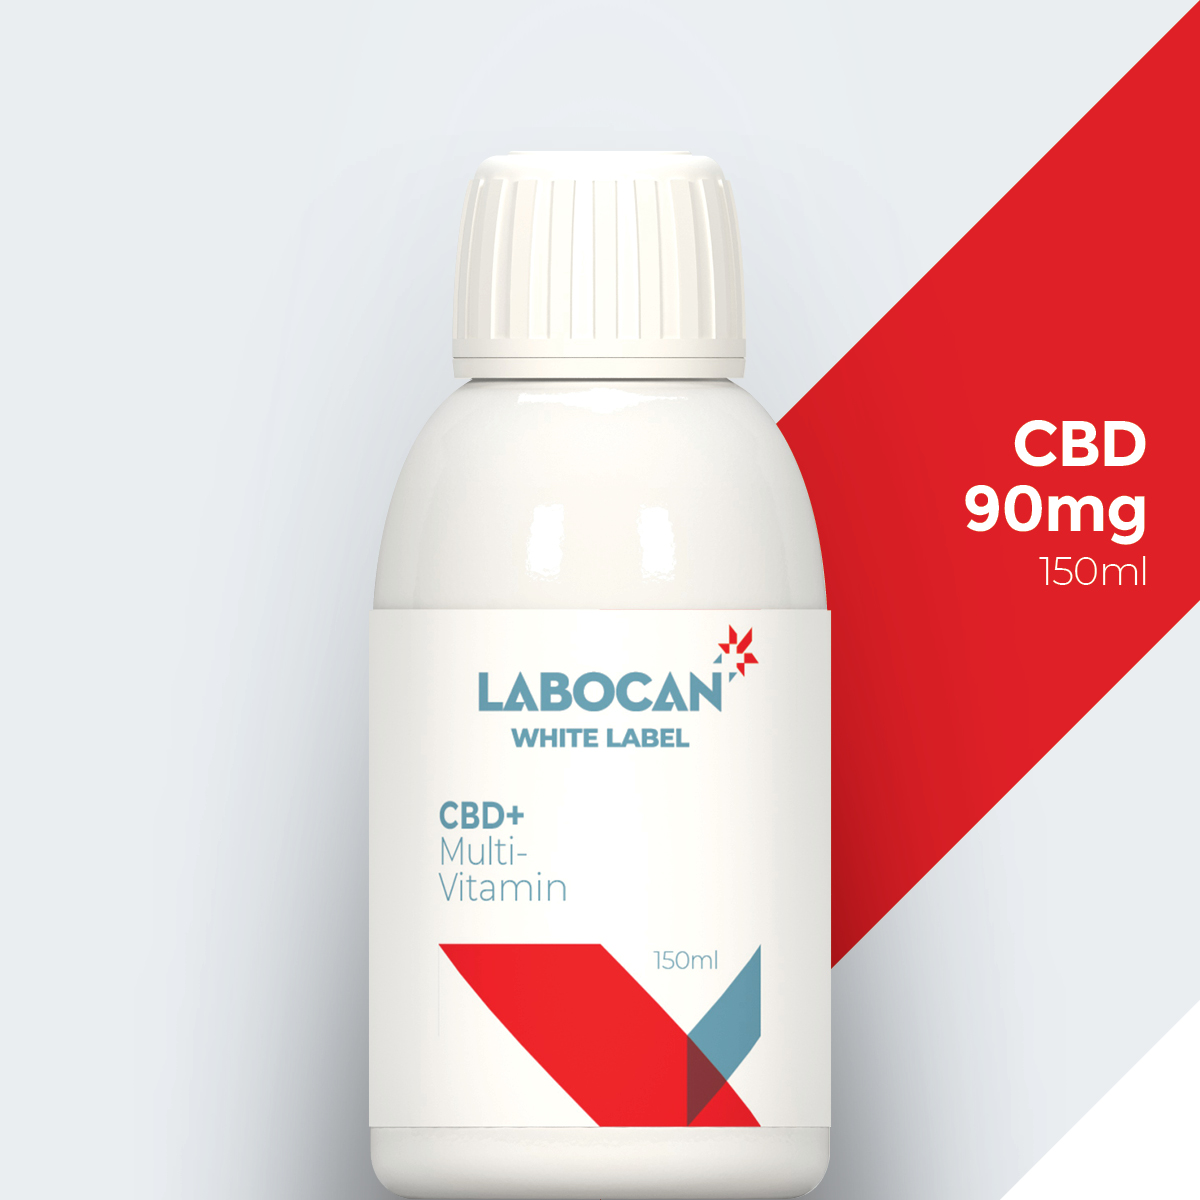 Labocan White label cbd multivitamin